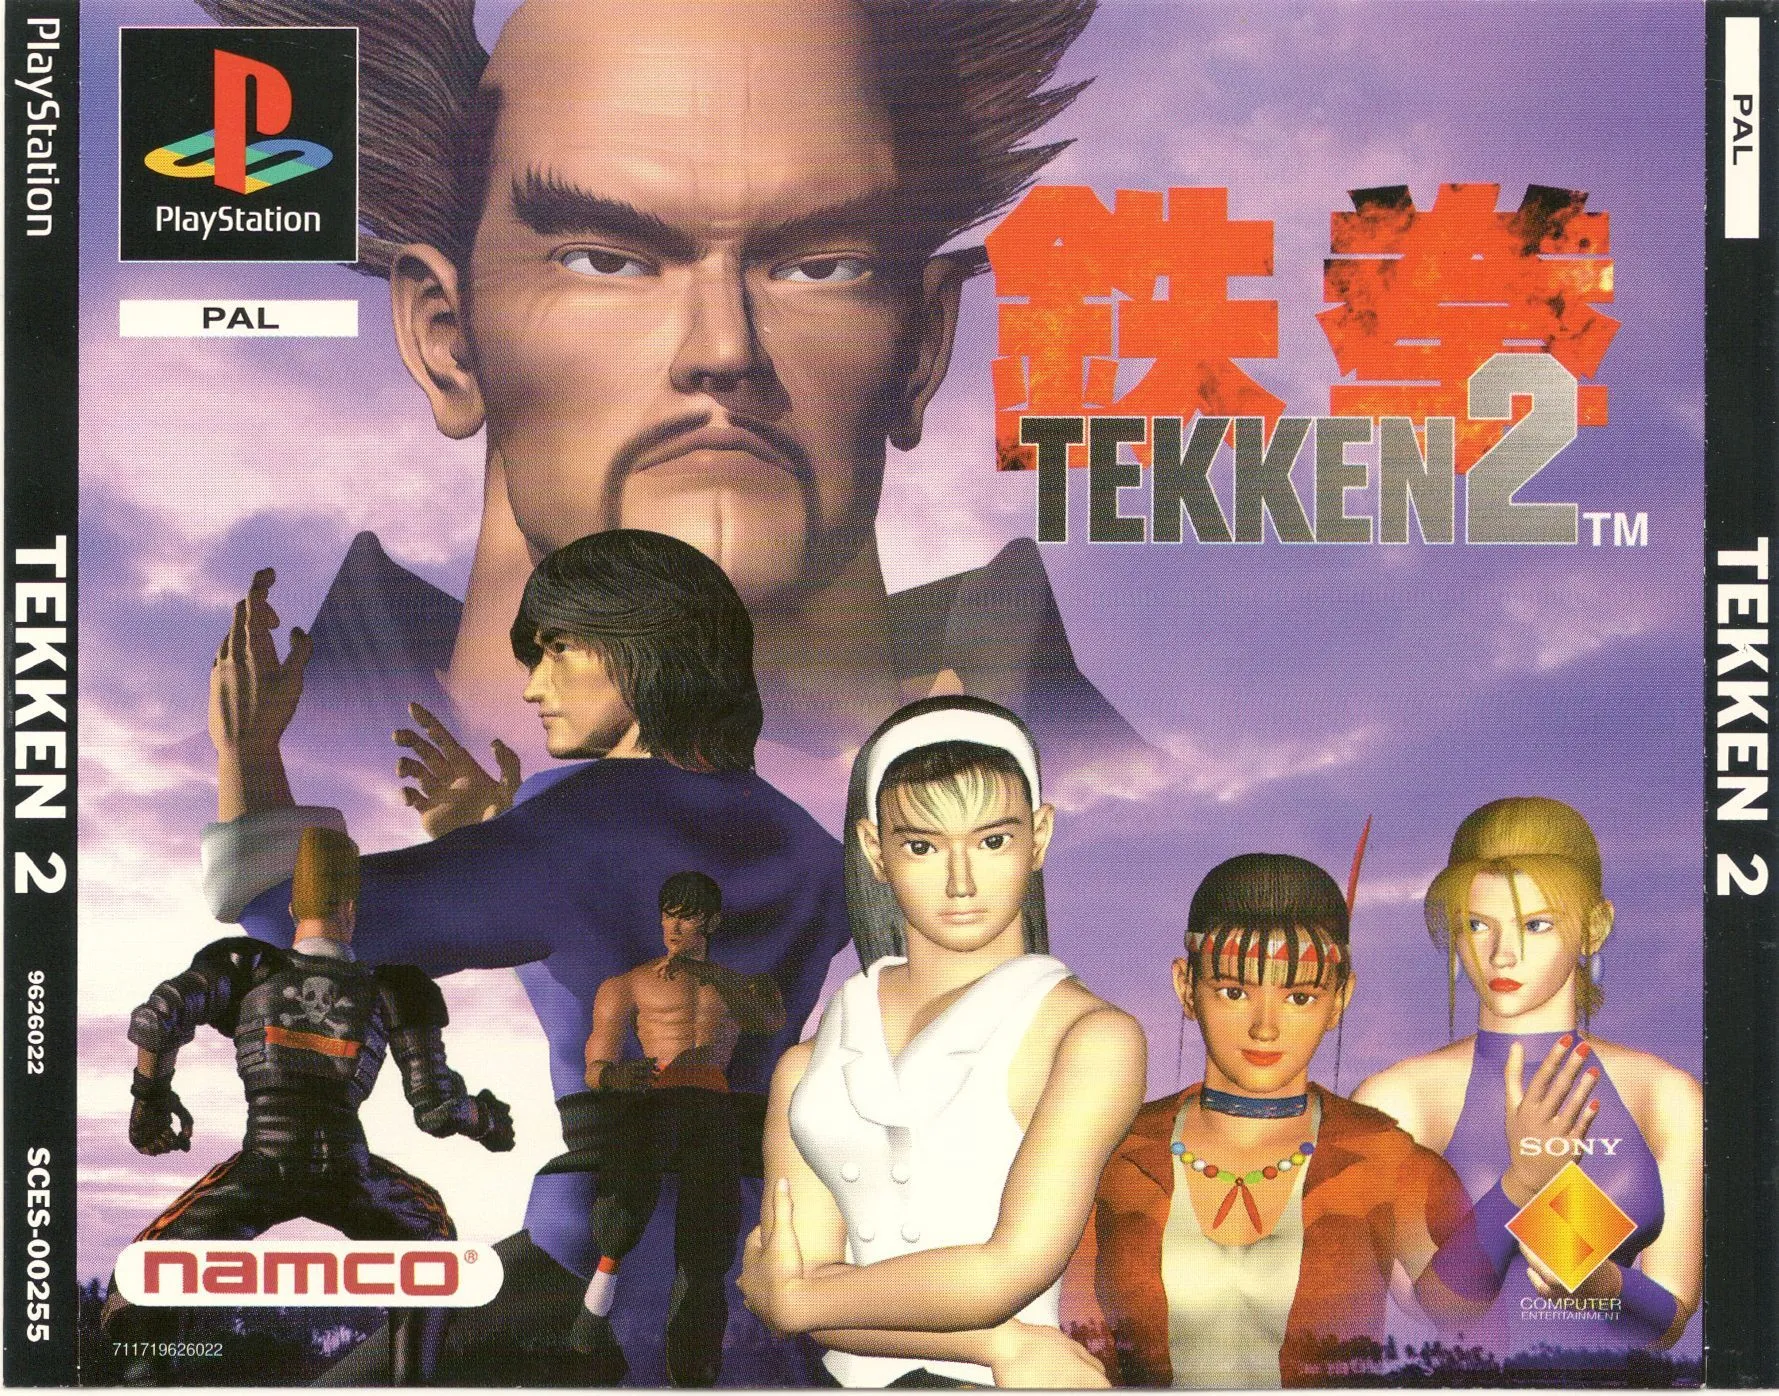 Download Tekken 2 Game For PC